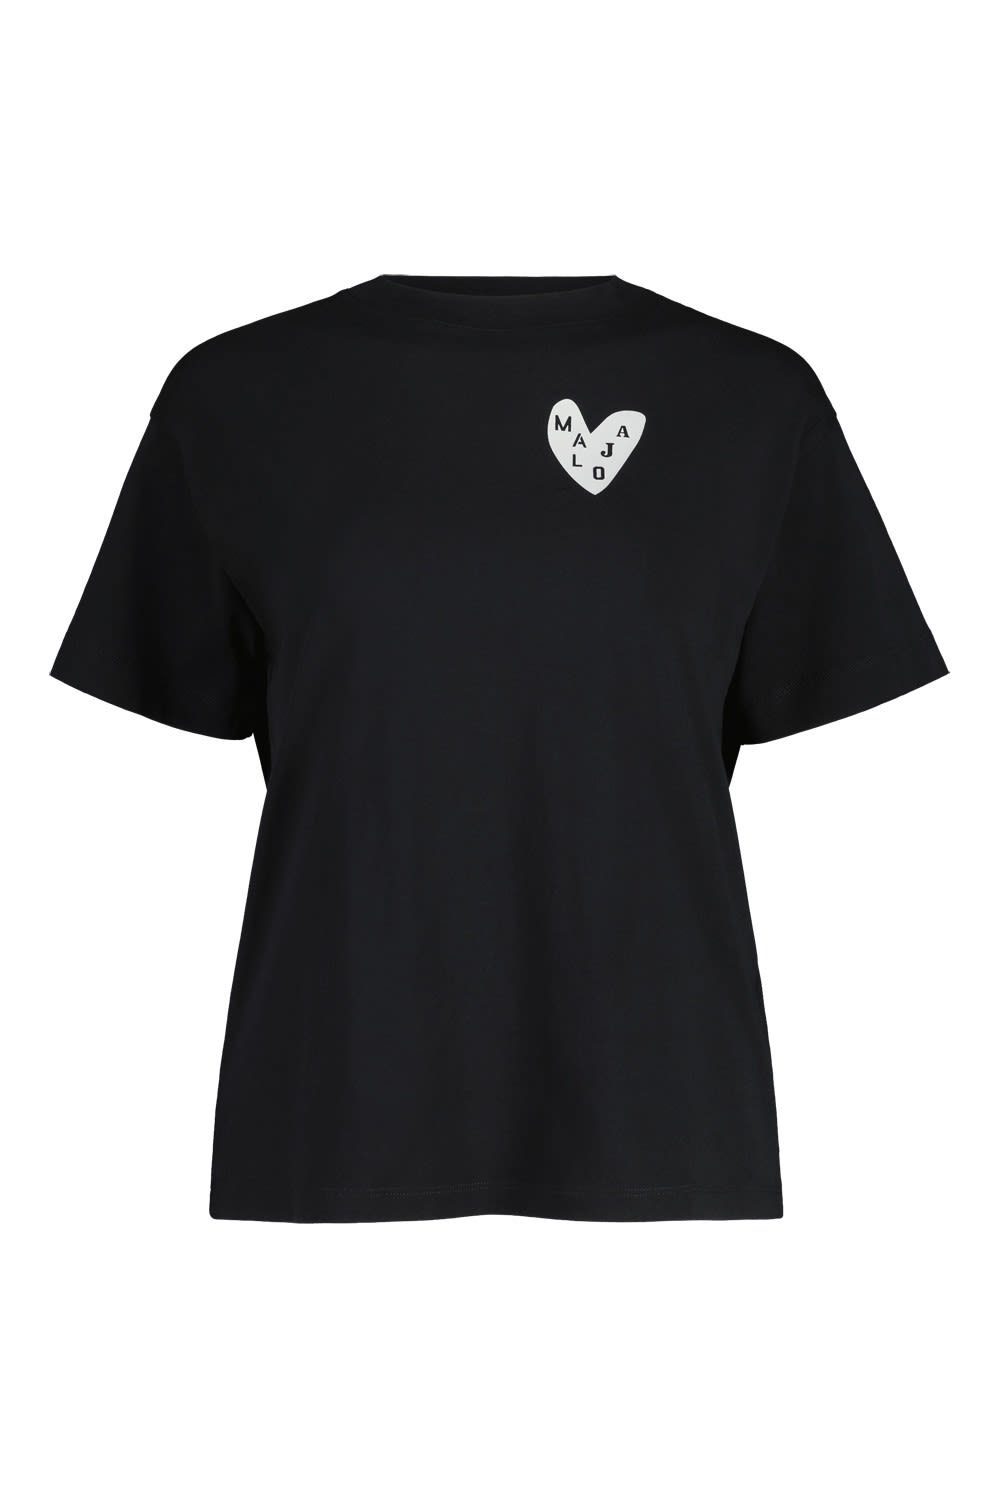 Moonless T-Shirt Maloja Kurzarm-Shirt W Triglavm. Maloja Damen T-shirt